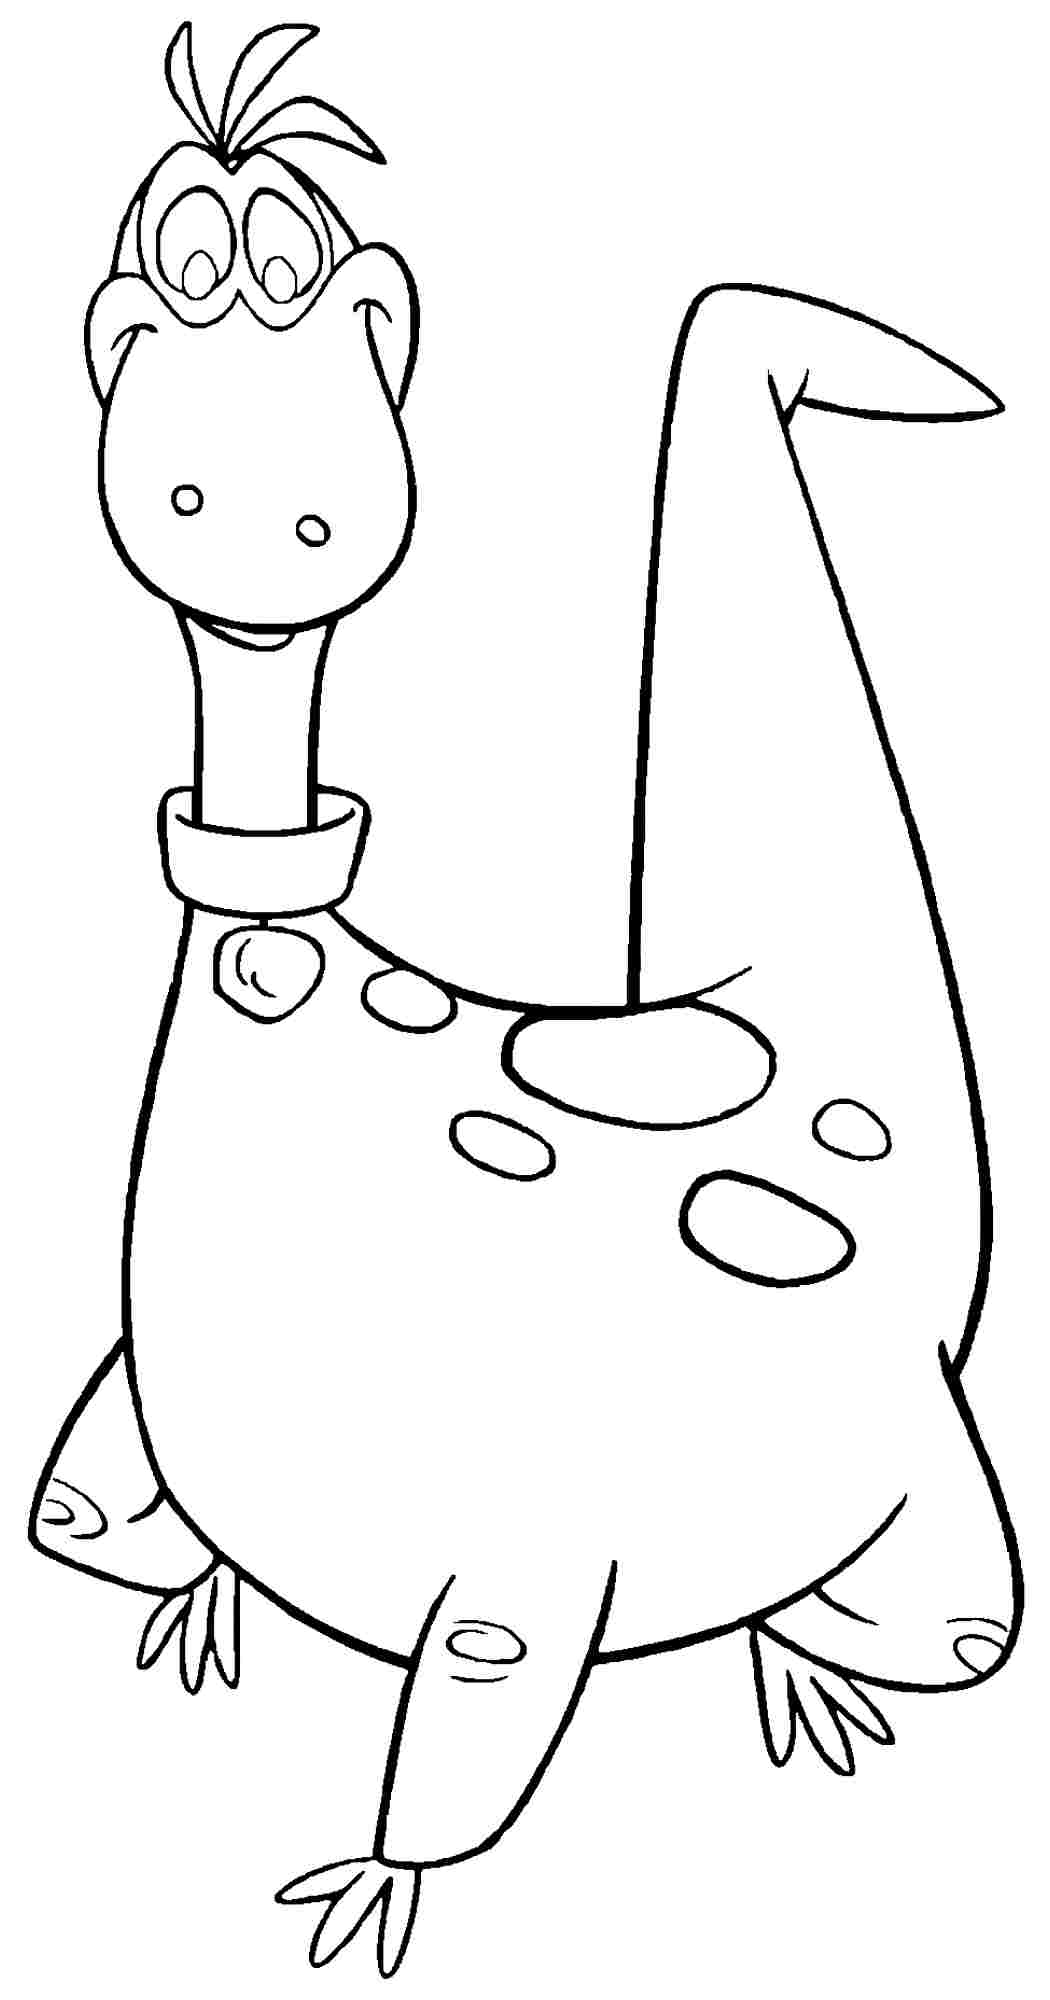 Disegno da colorare di Dino personaggio Gli Antenati